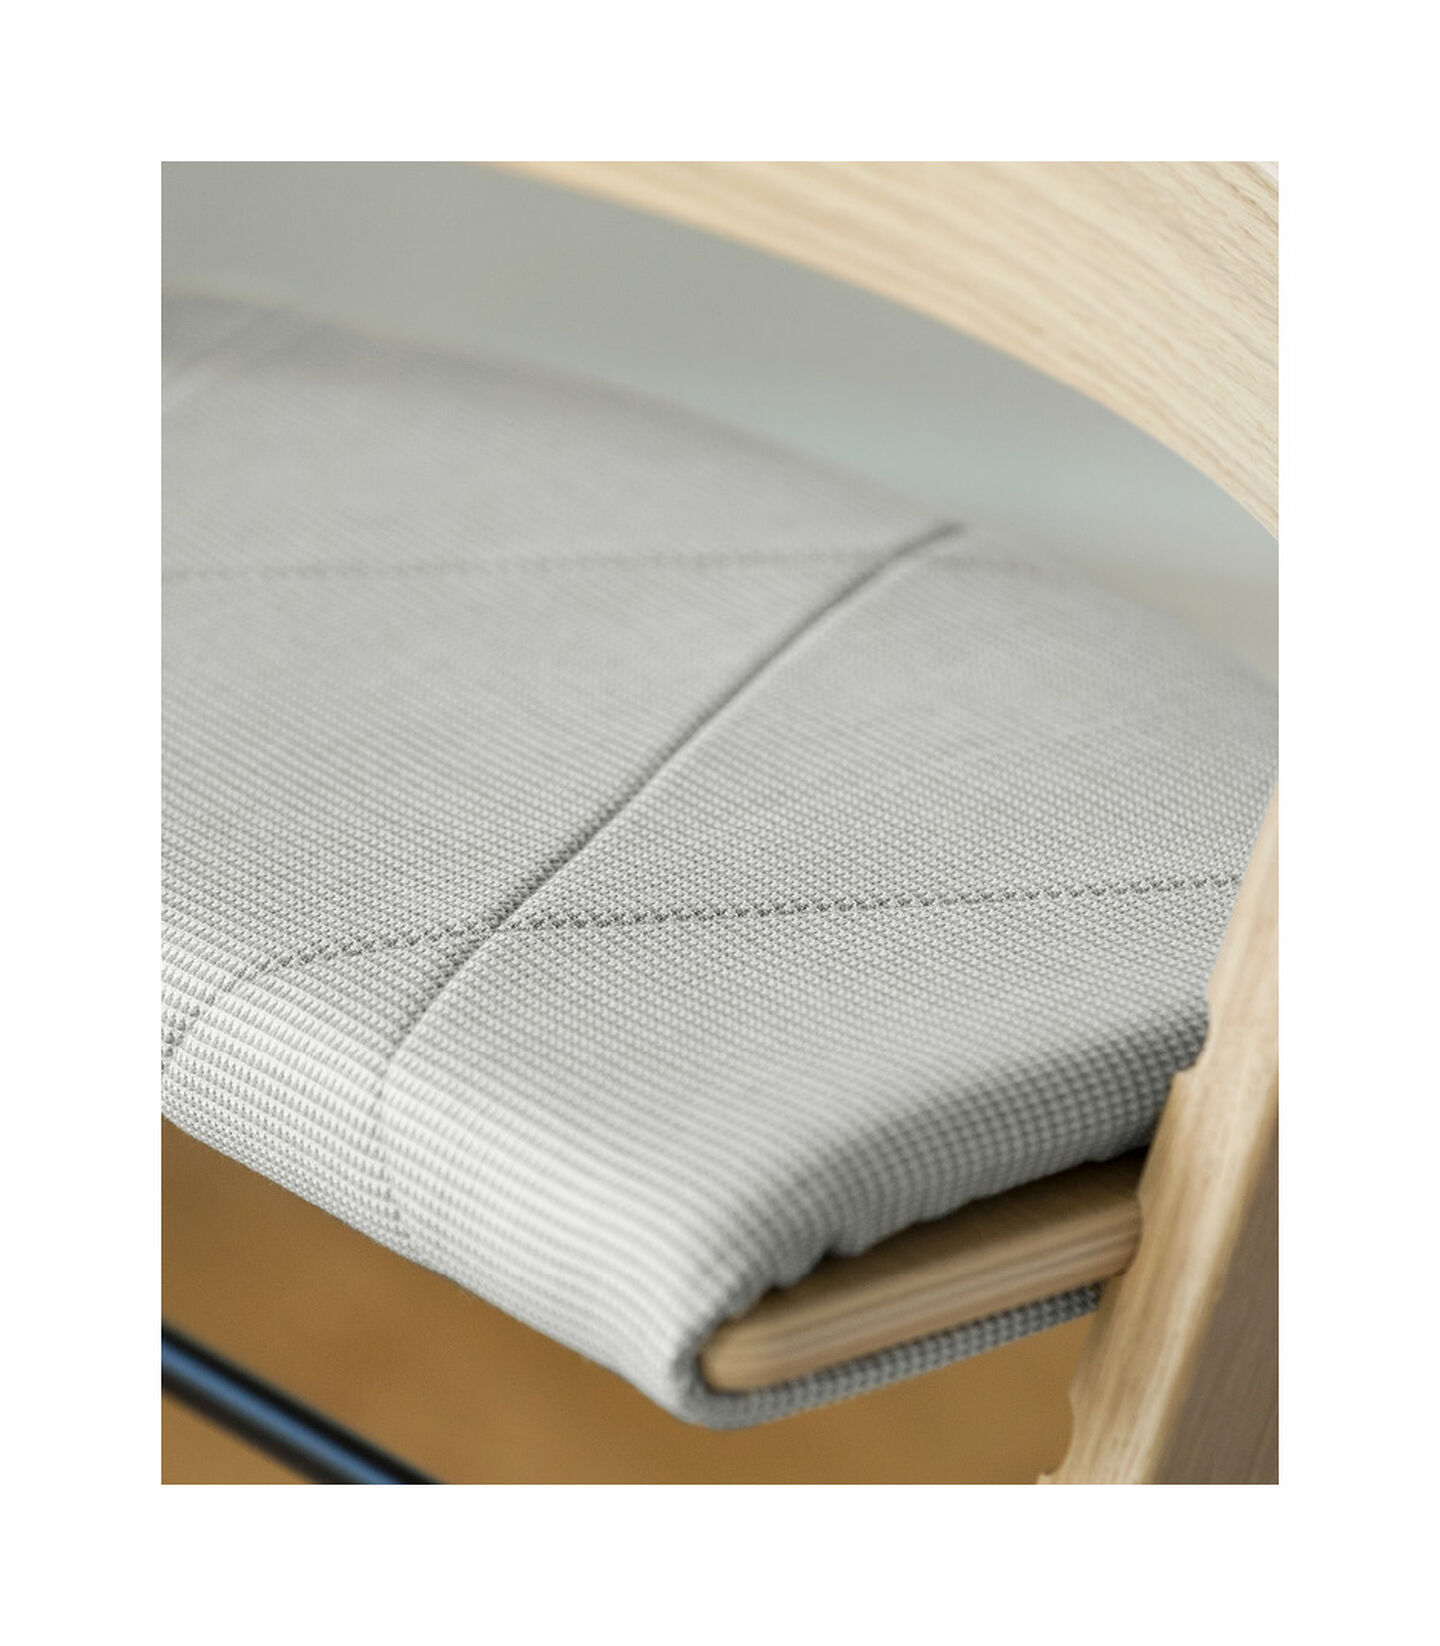 Подушка детская Junior на стульчик Tripp Trapp® Nordic Grey, Nordic Grey / Скандинавский серый, mainview view 4